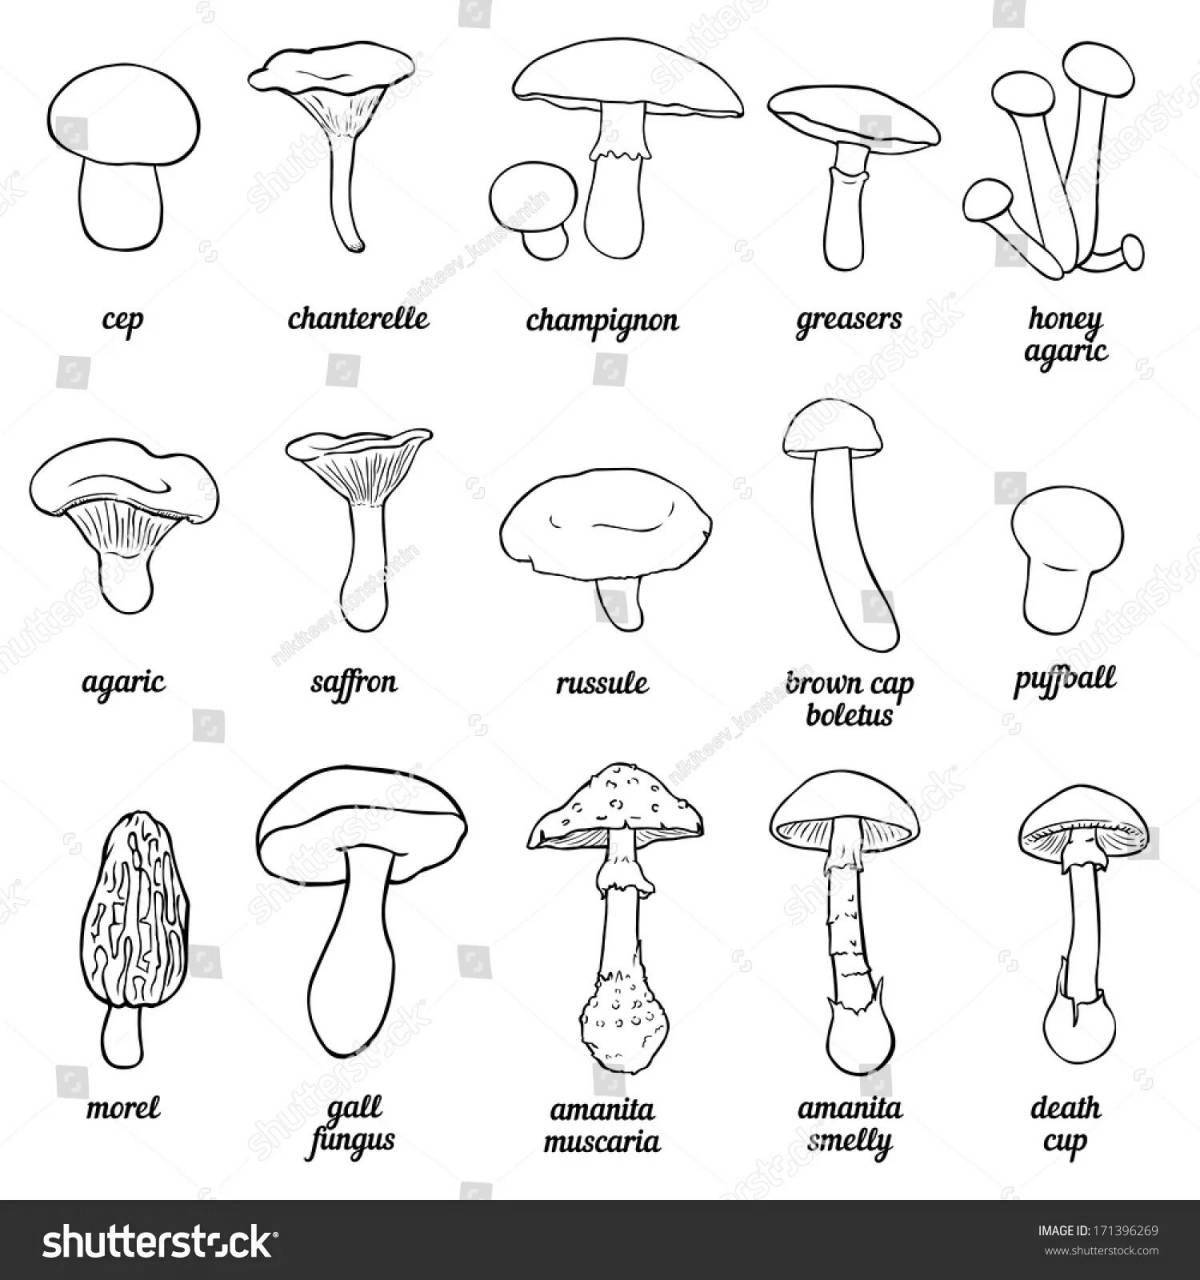 Bright inedible mushrooms